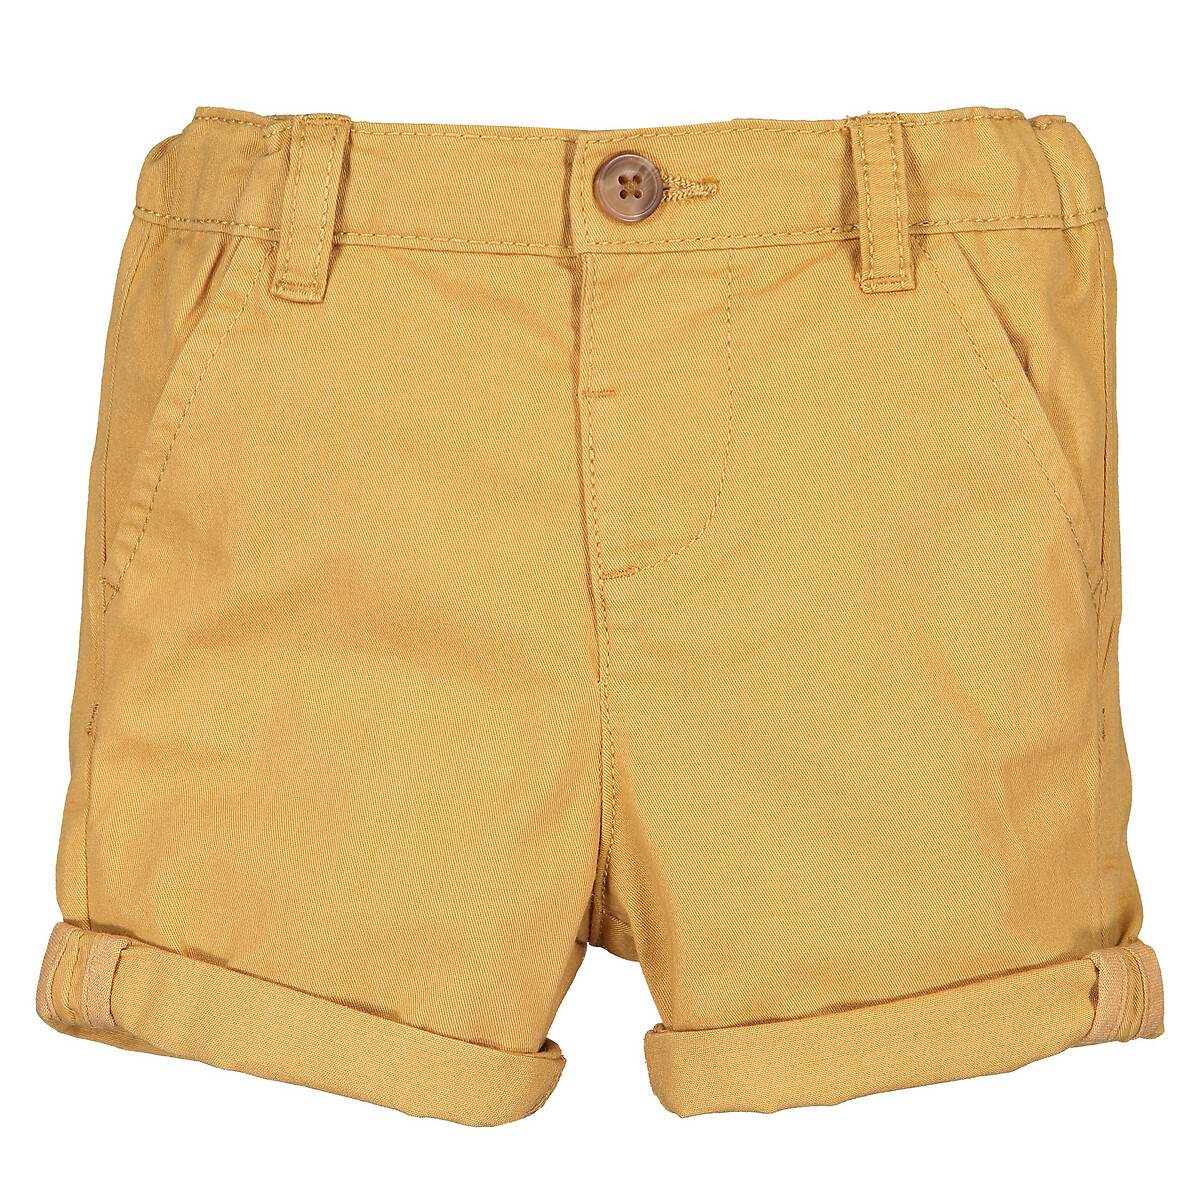 джинсовые шорты laredoute для мальчика, желтые